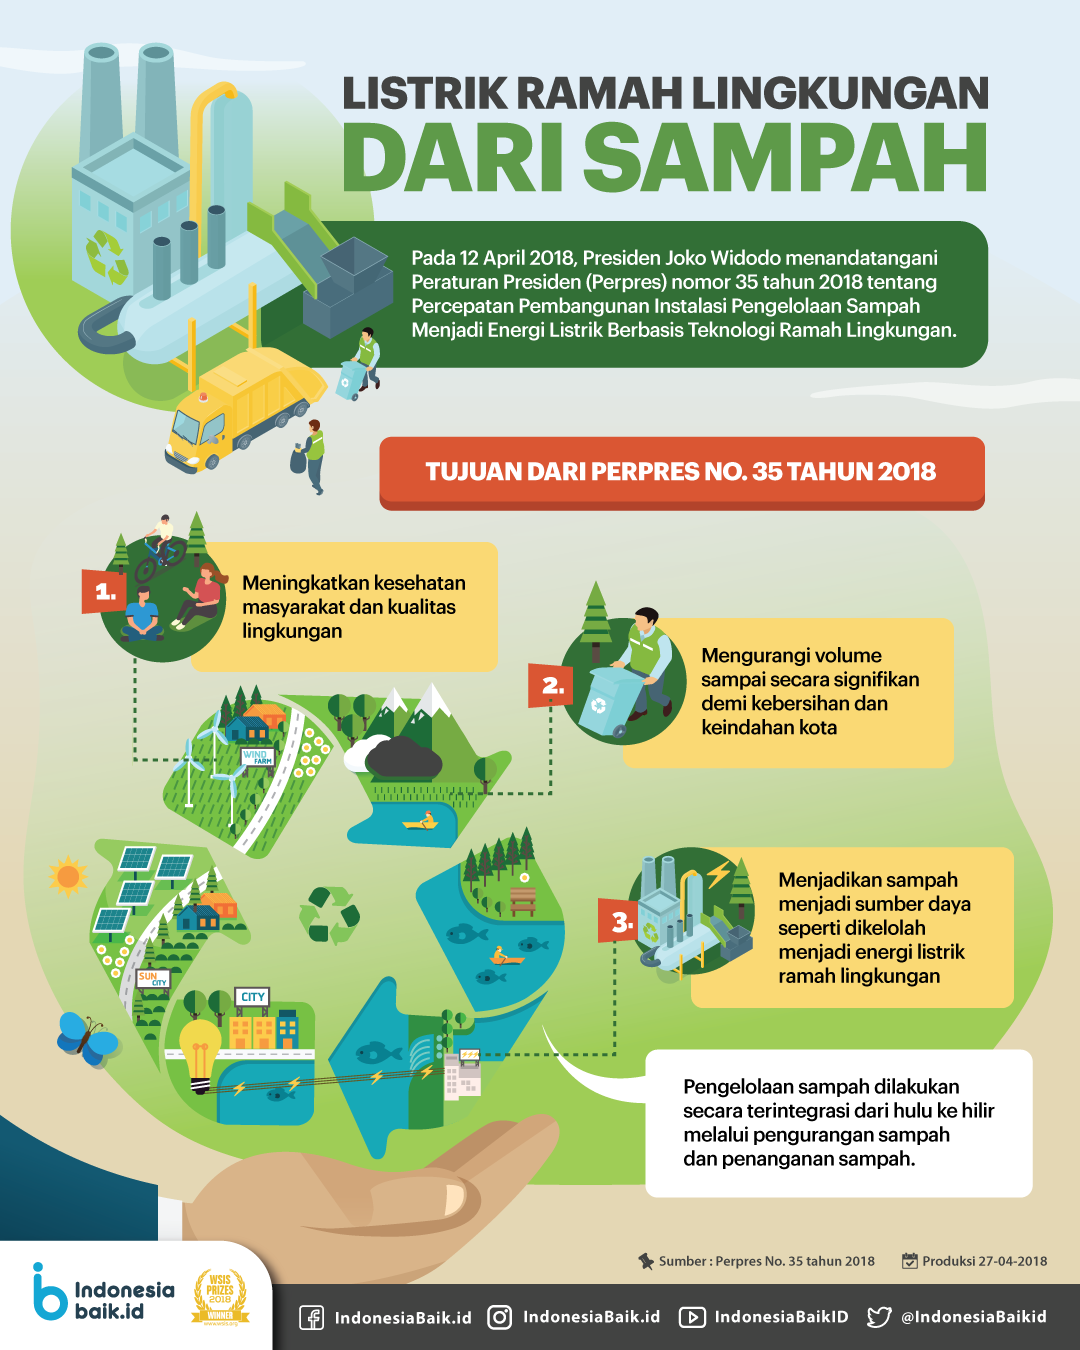 Listrik Ramah Lingkungan dari Sampah | Indonesia Baik